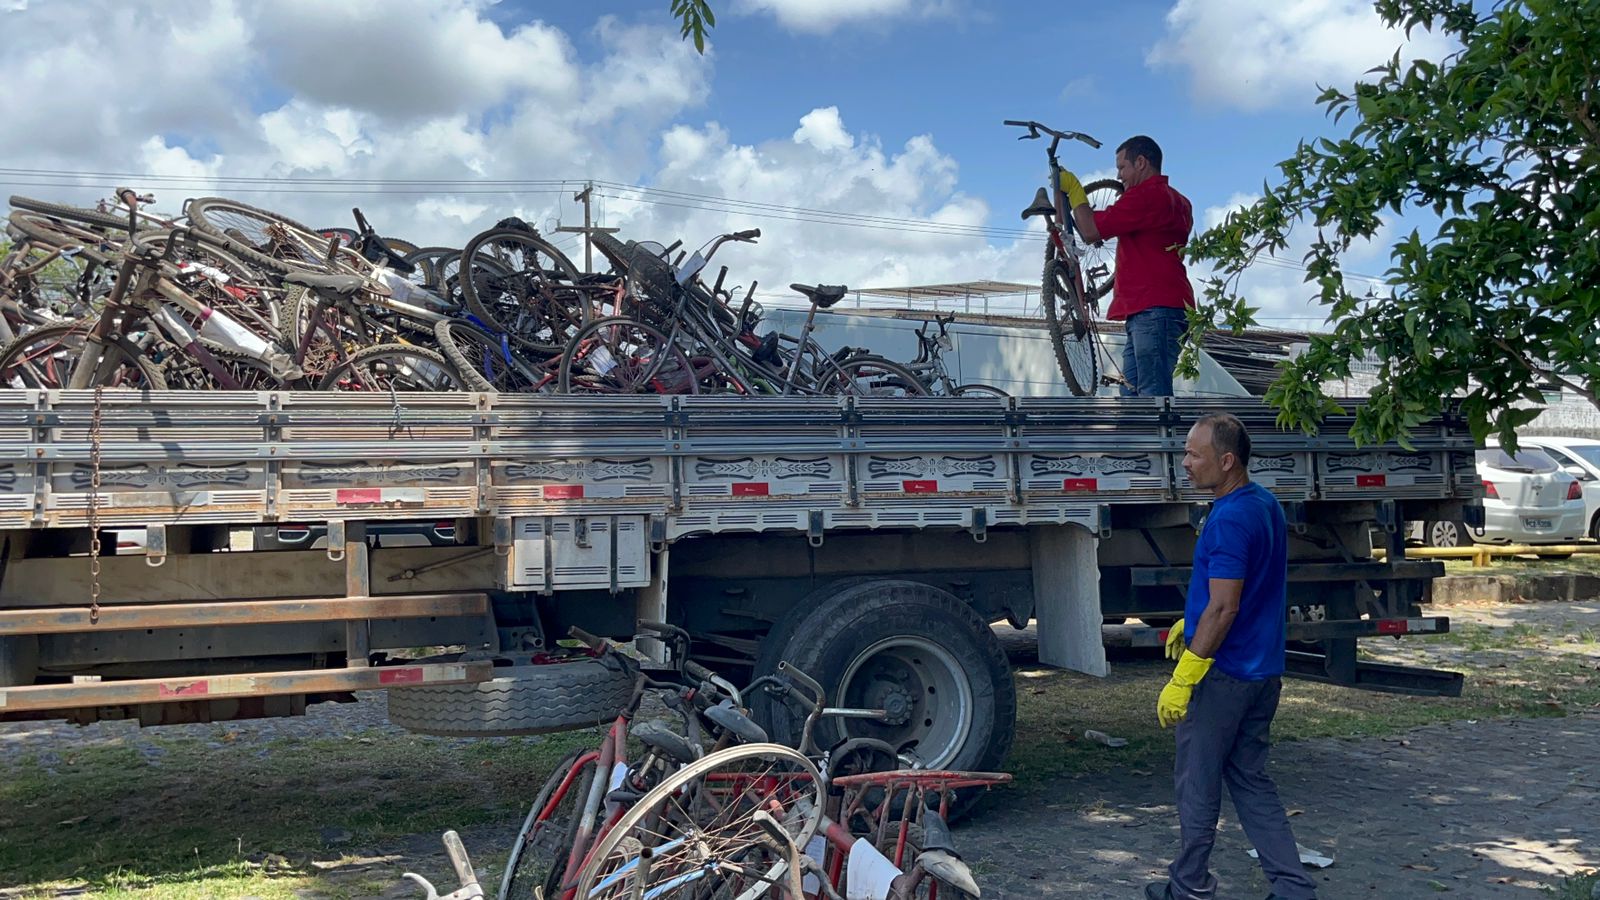 Bicicletas sendo colocadas no caminhão para doação